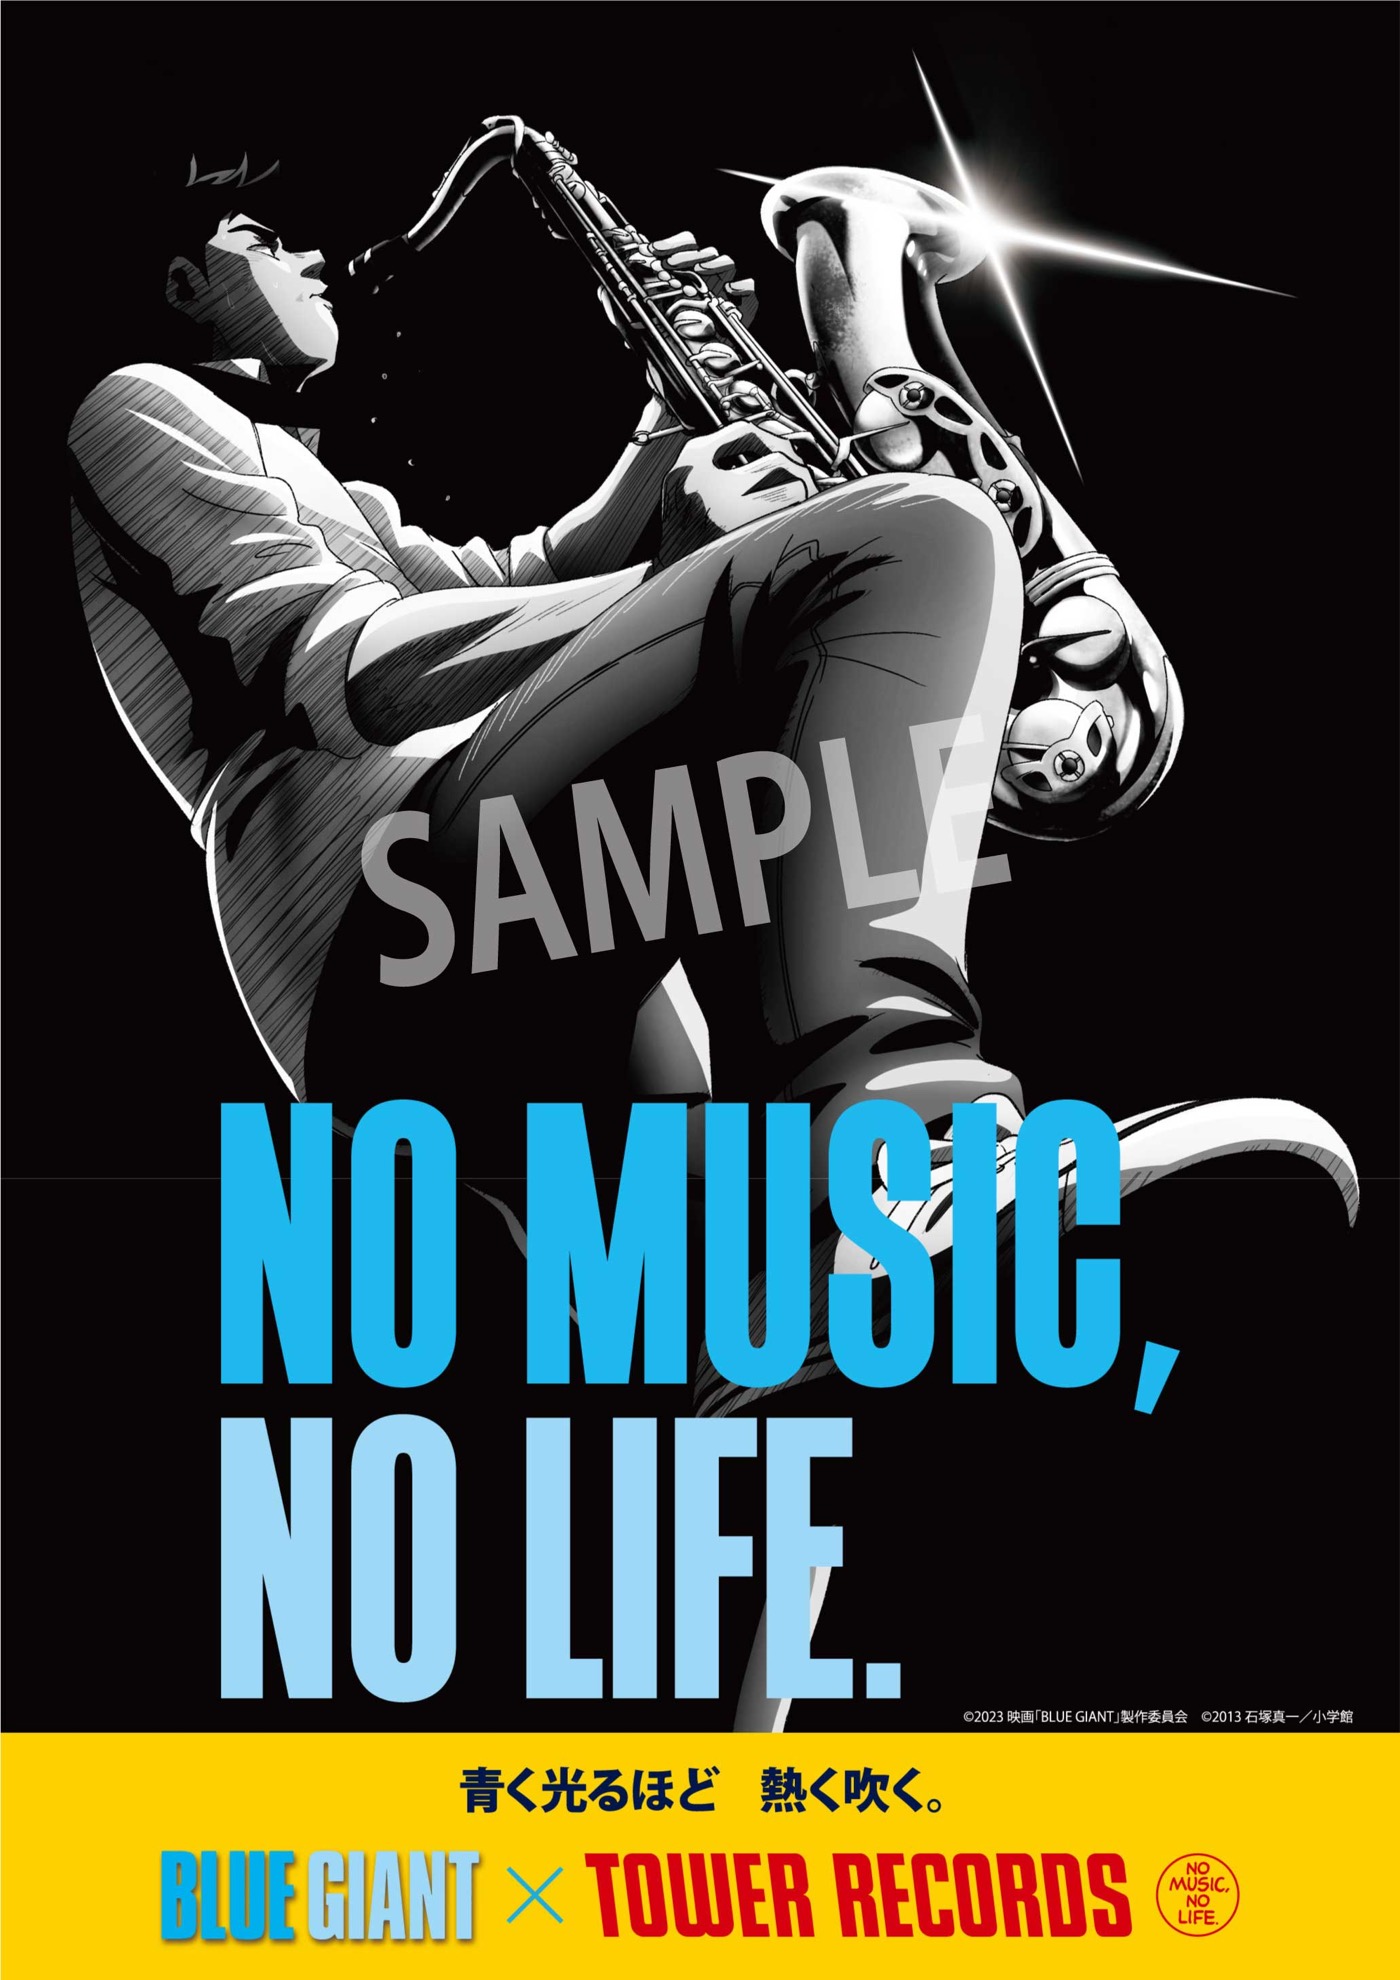 映画『BLUE GIANT』×TOWER RECORDS 「NO MUSIC, NO LIFE.」コラボポスター解禁 - 画像一覧（1/2）